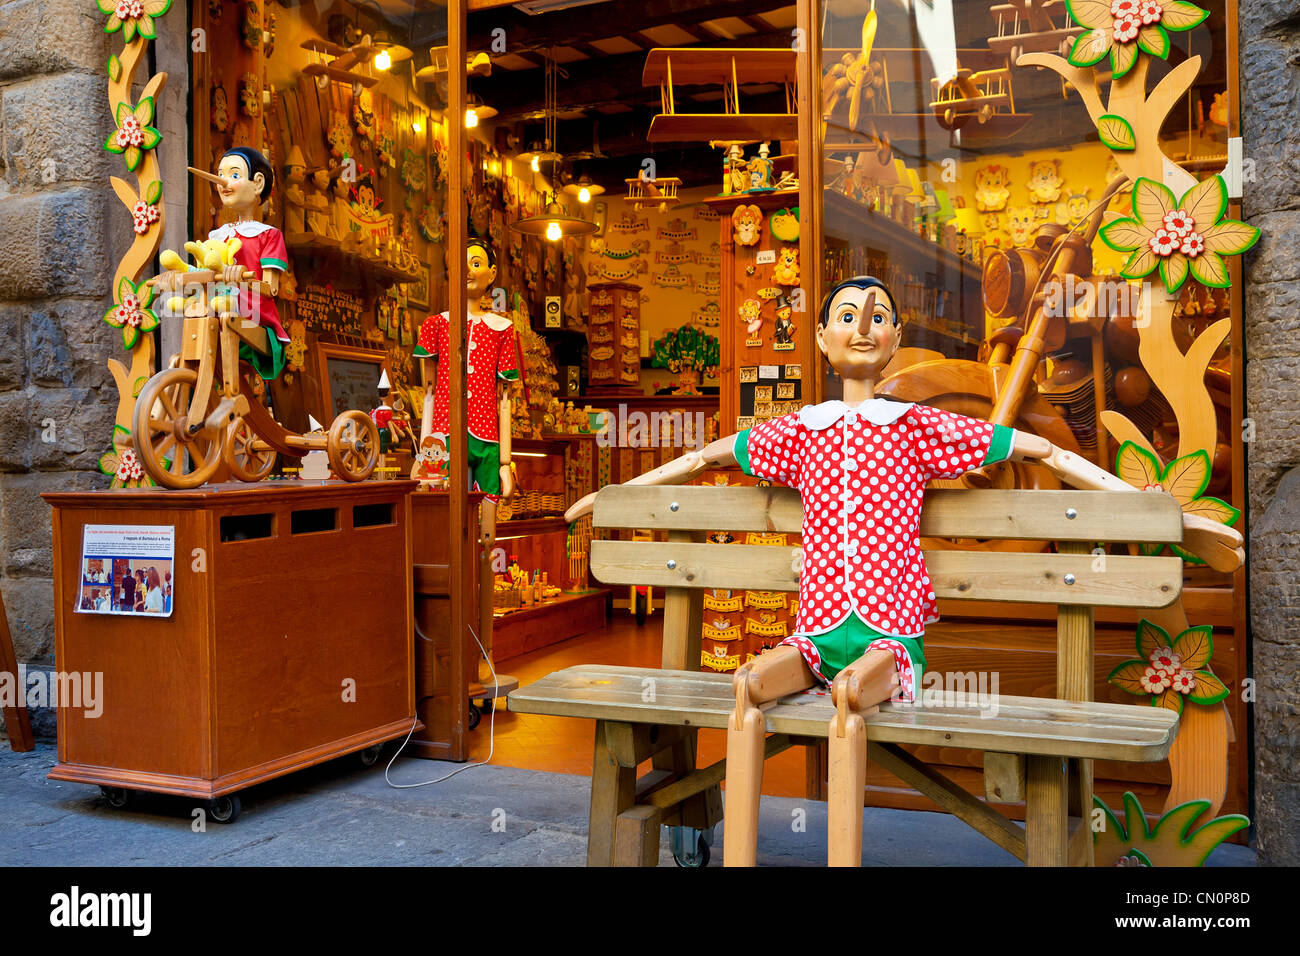 Europa, Italien, Florenz, Pinocchio-Shop Stockfoto